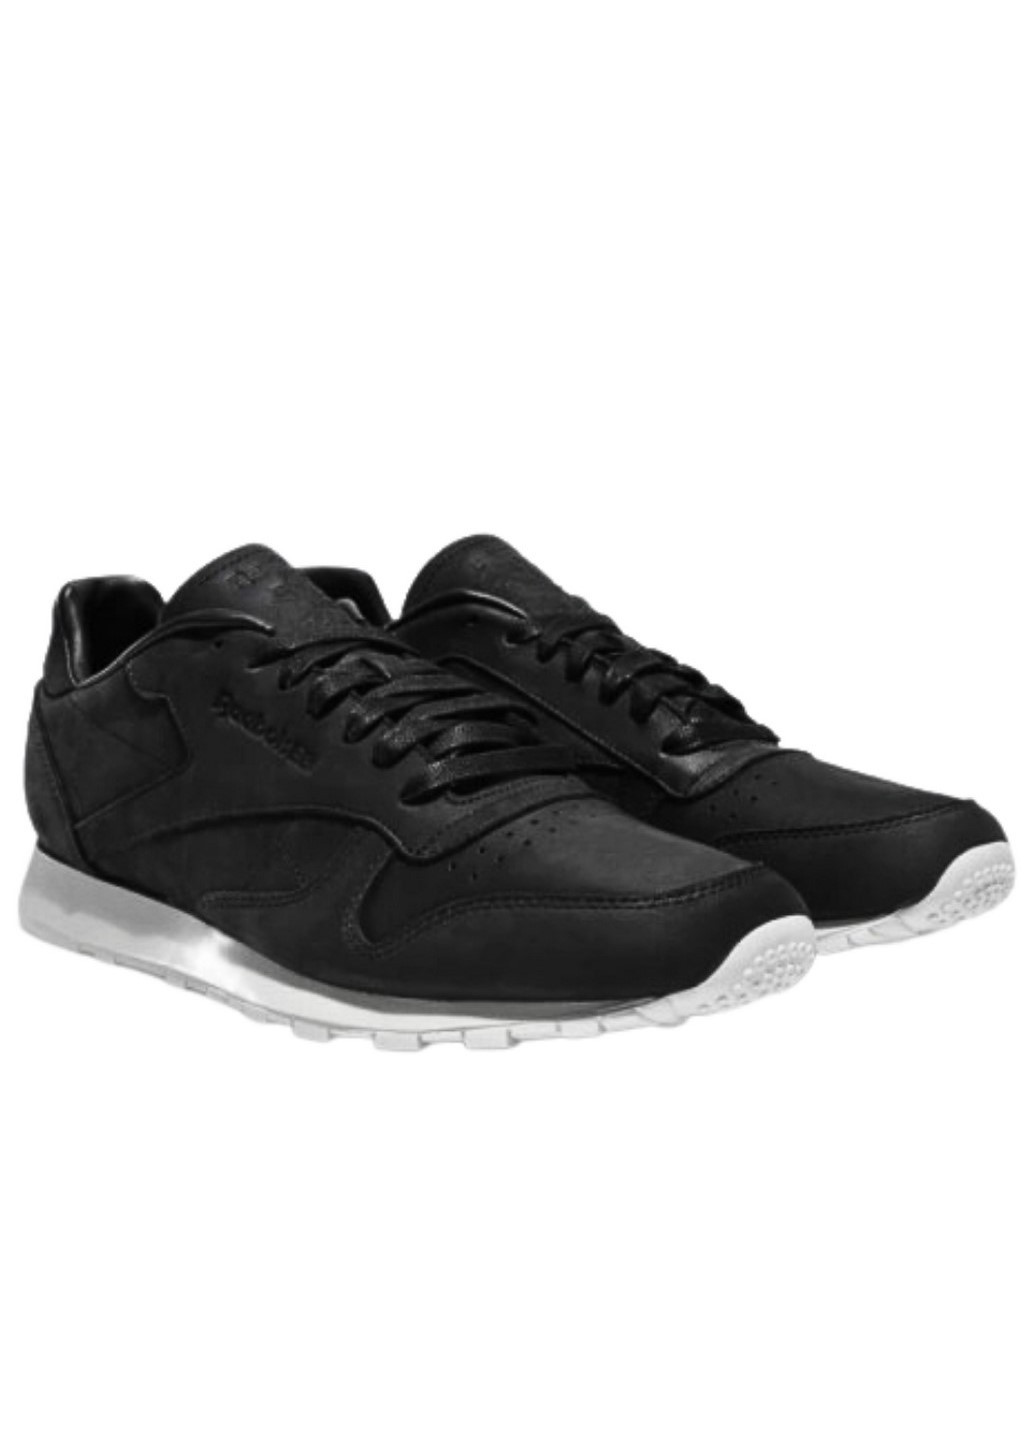 Черные демисезонные мужские кроссовки classic leather lux pw v68685 Reebok